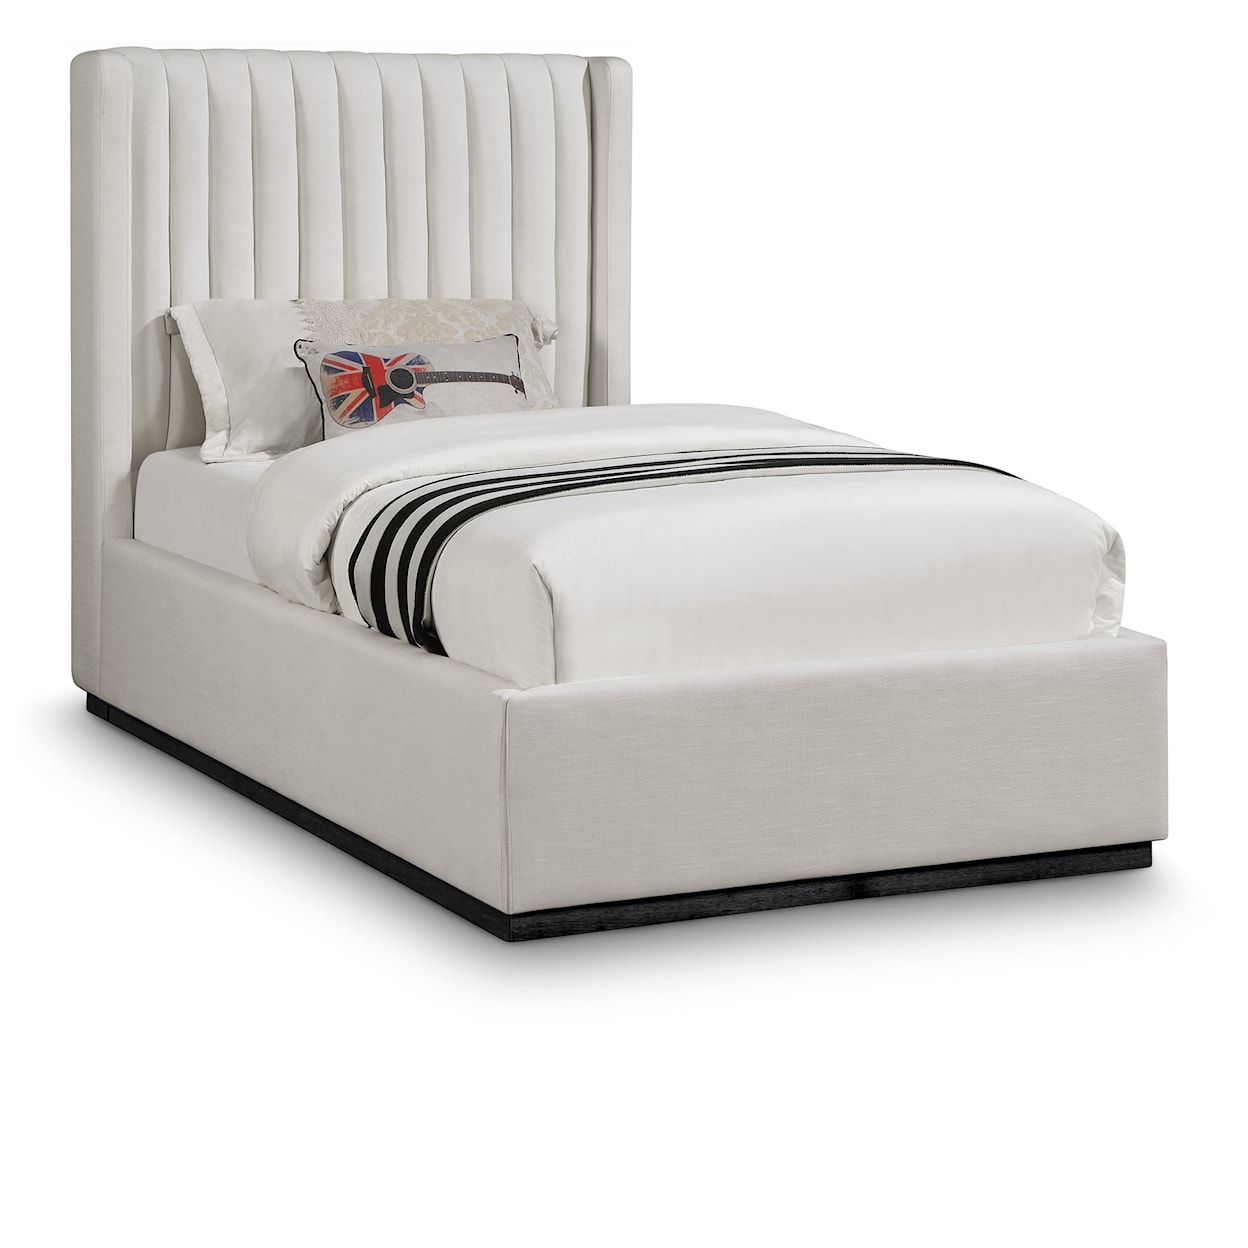 Meridian Furniture Logan Twin Bed